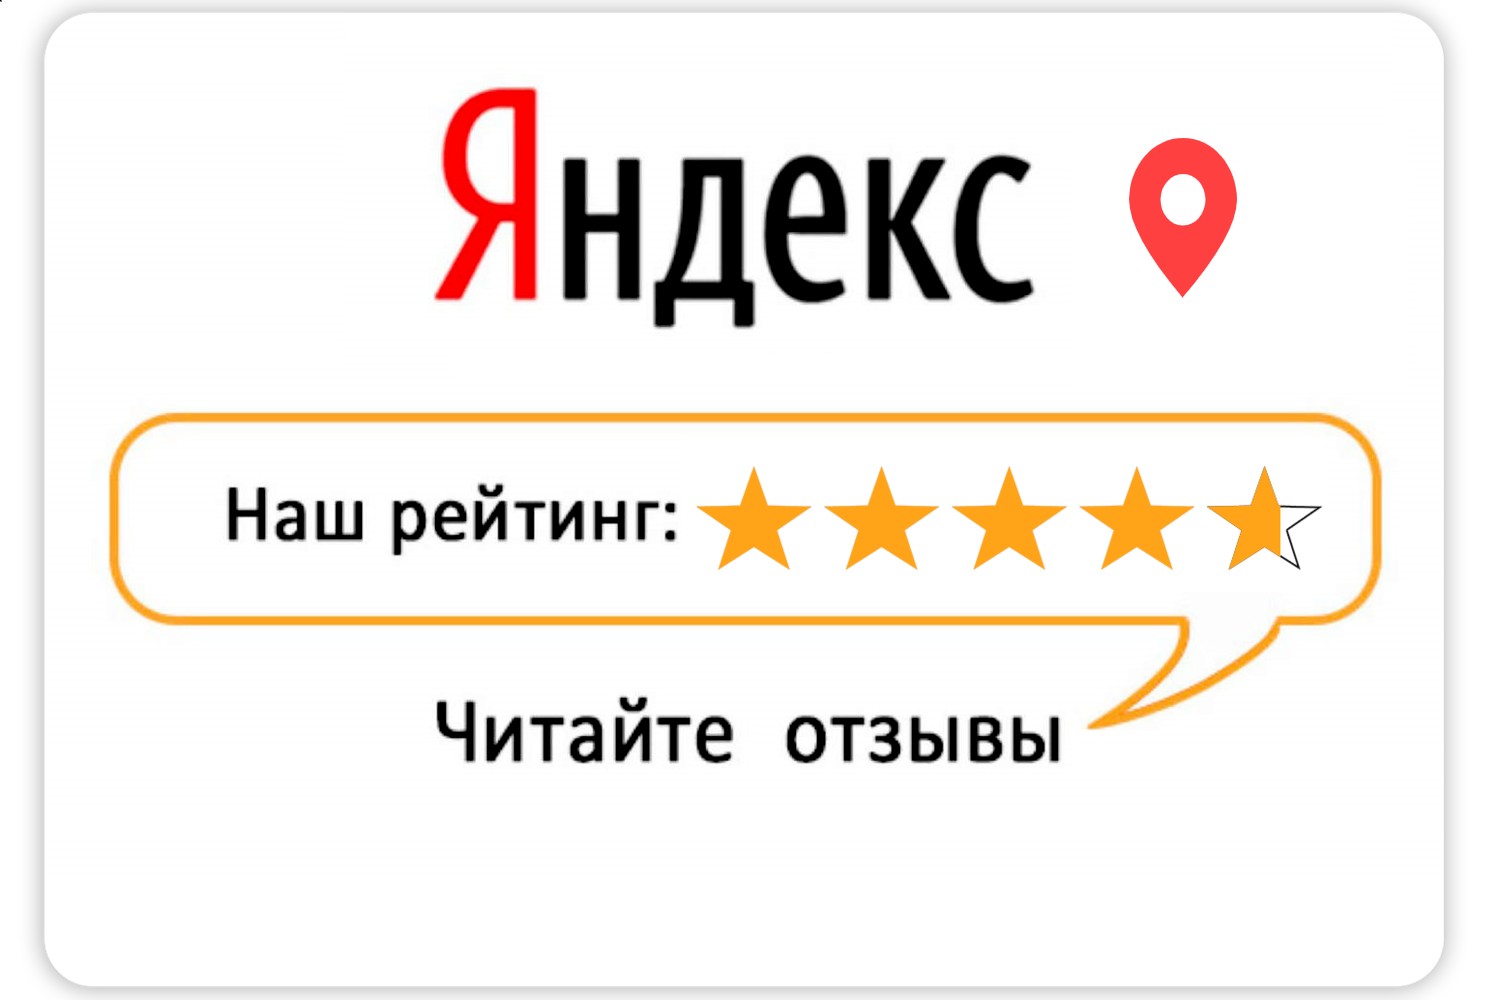 Юридическая консультация ПроЗакон отзывы на Яндекс картах